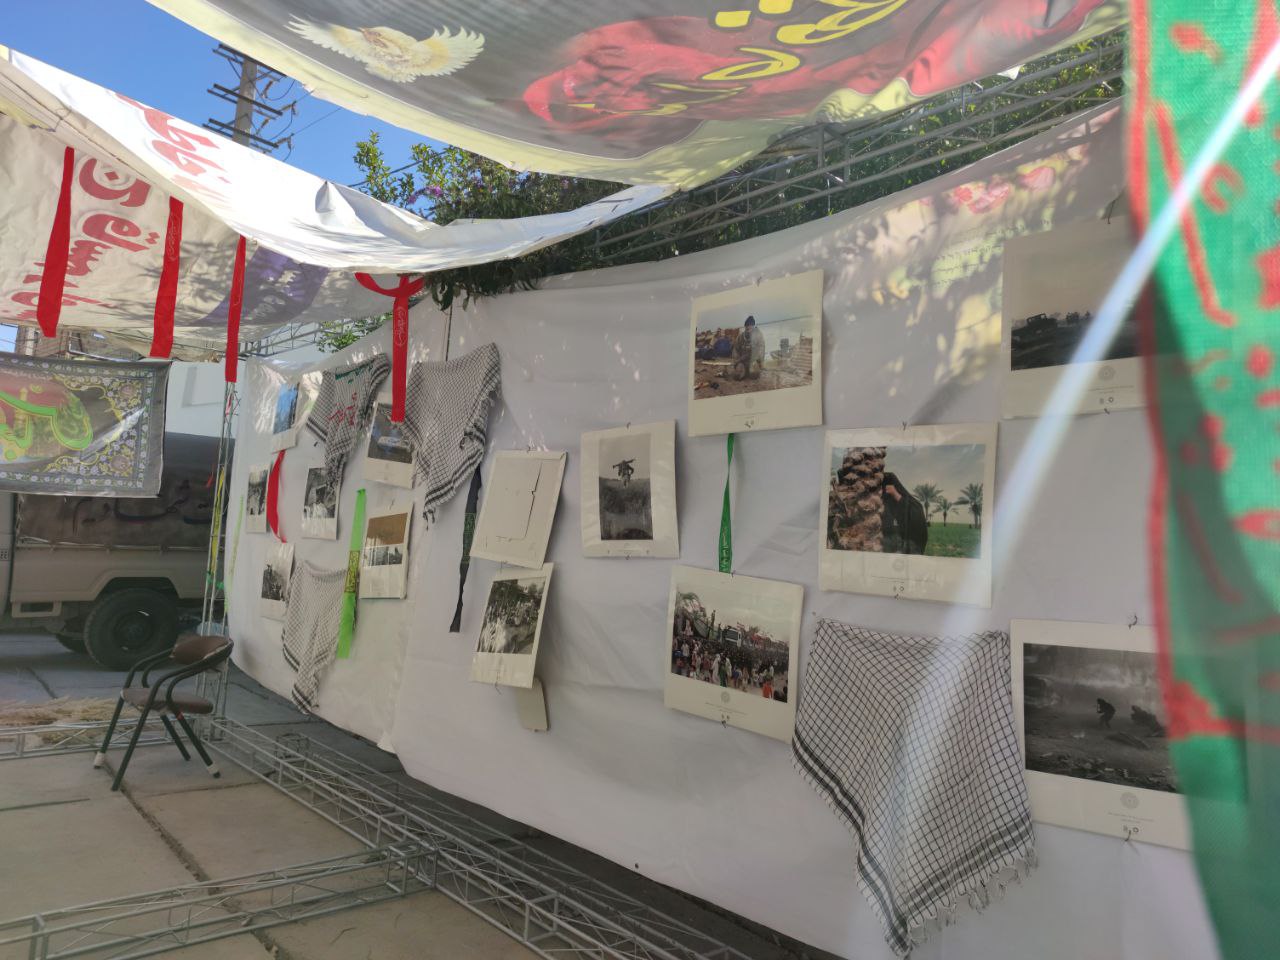 نمایشگاه یاد یاران در روستای خور درحال آماده سازی و راه اندازی میباشد